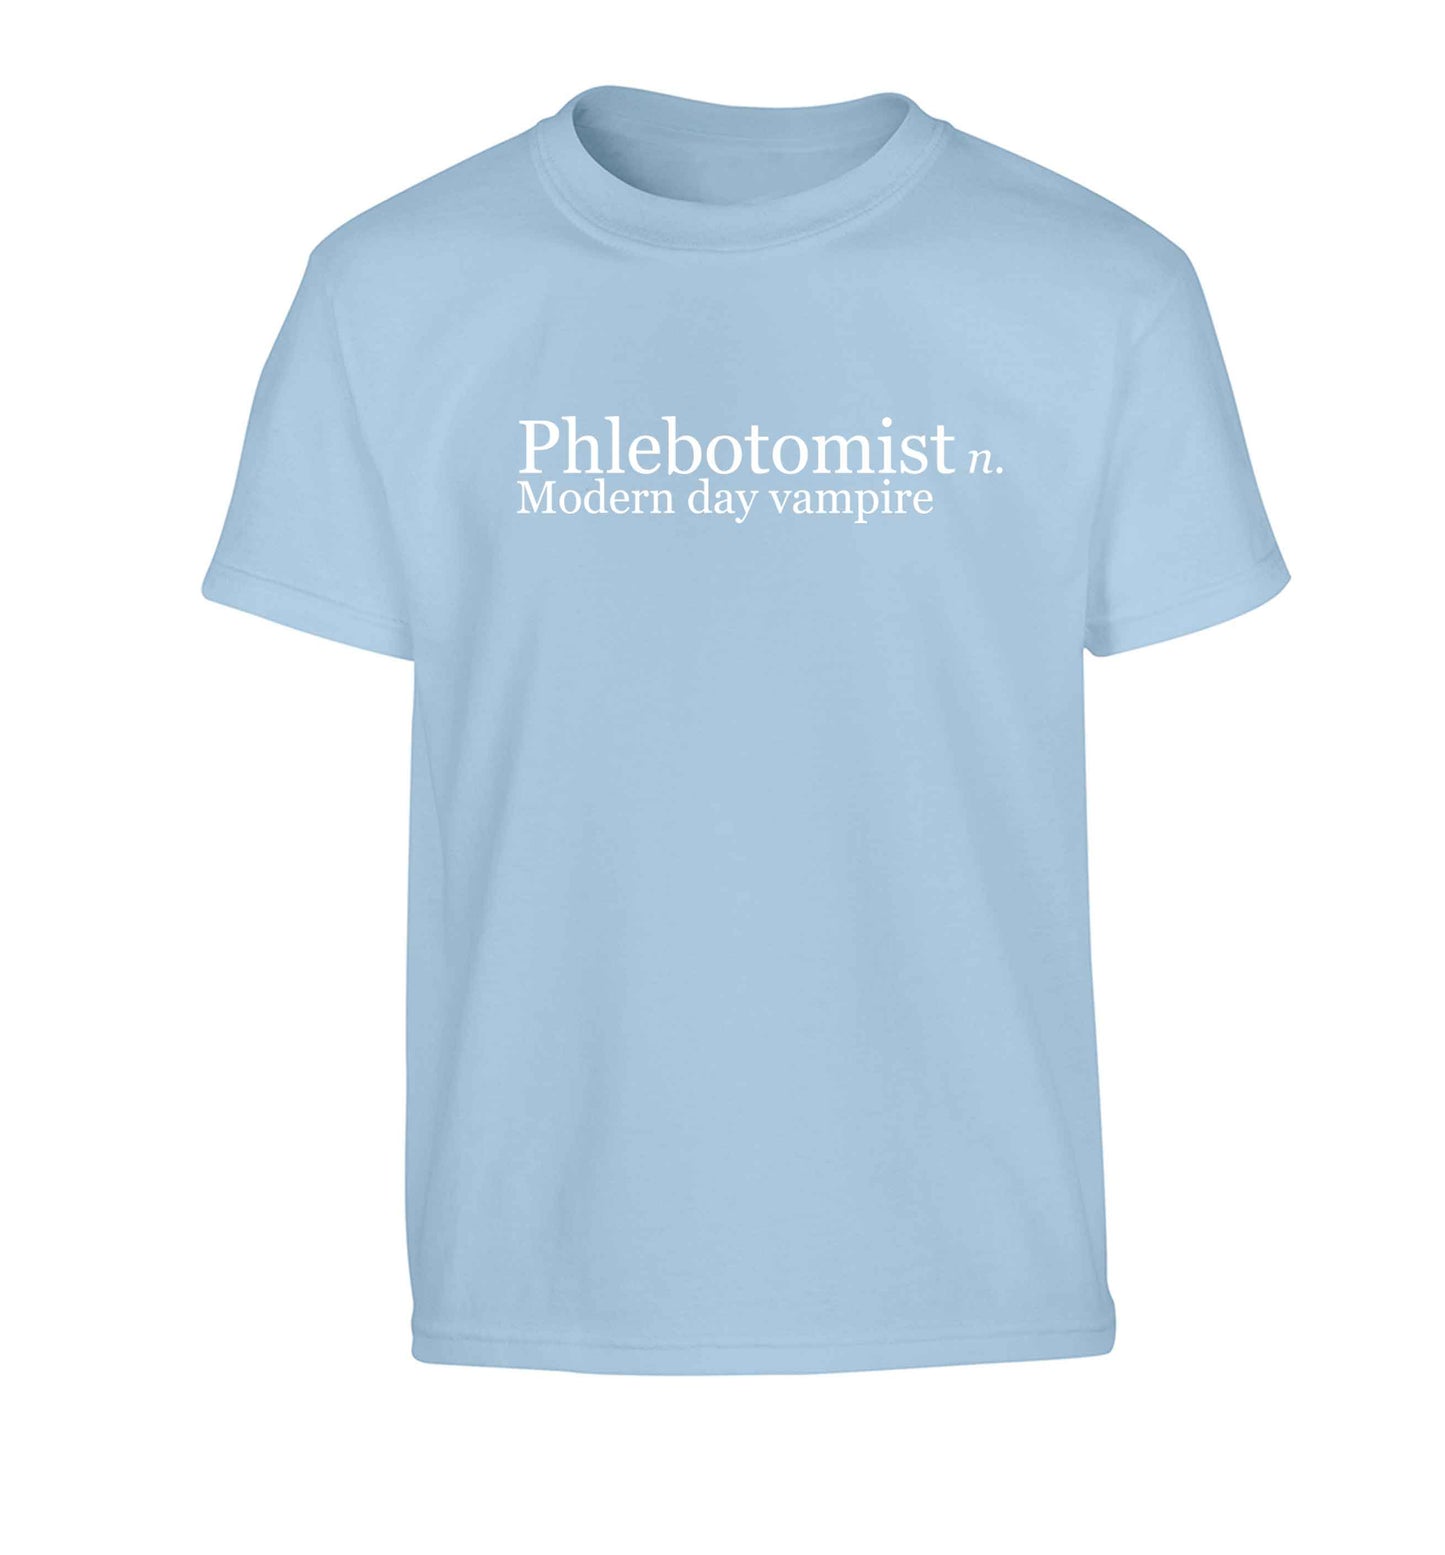 Phlebotomist - Modern day vampire Children's light blue Tshirt 12-13 Years